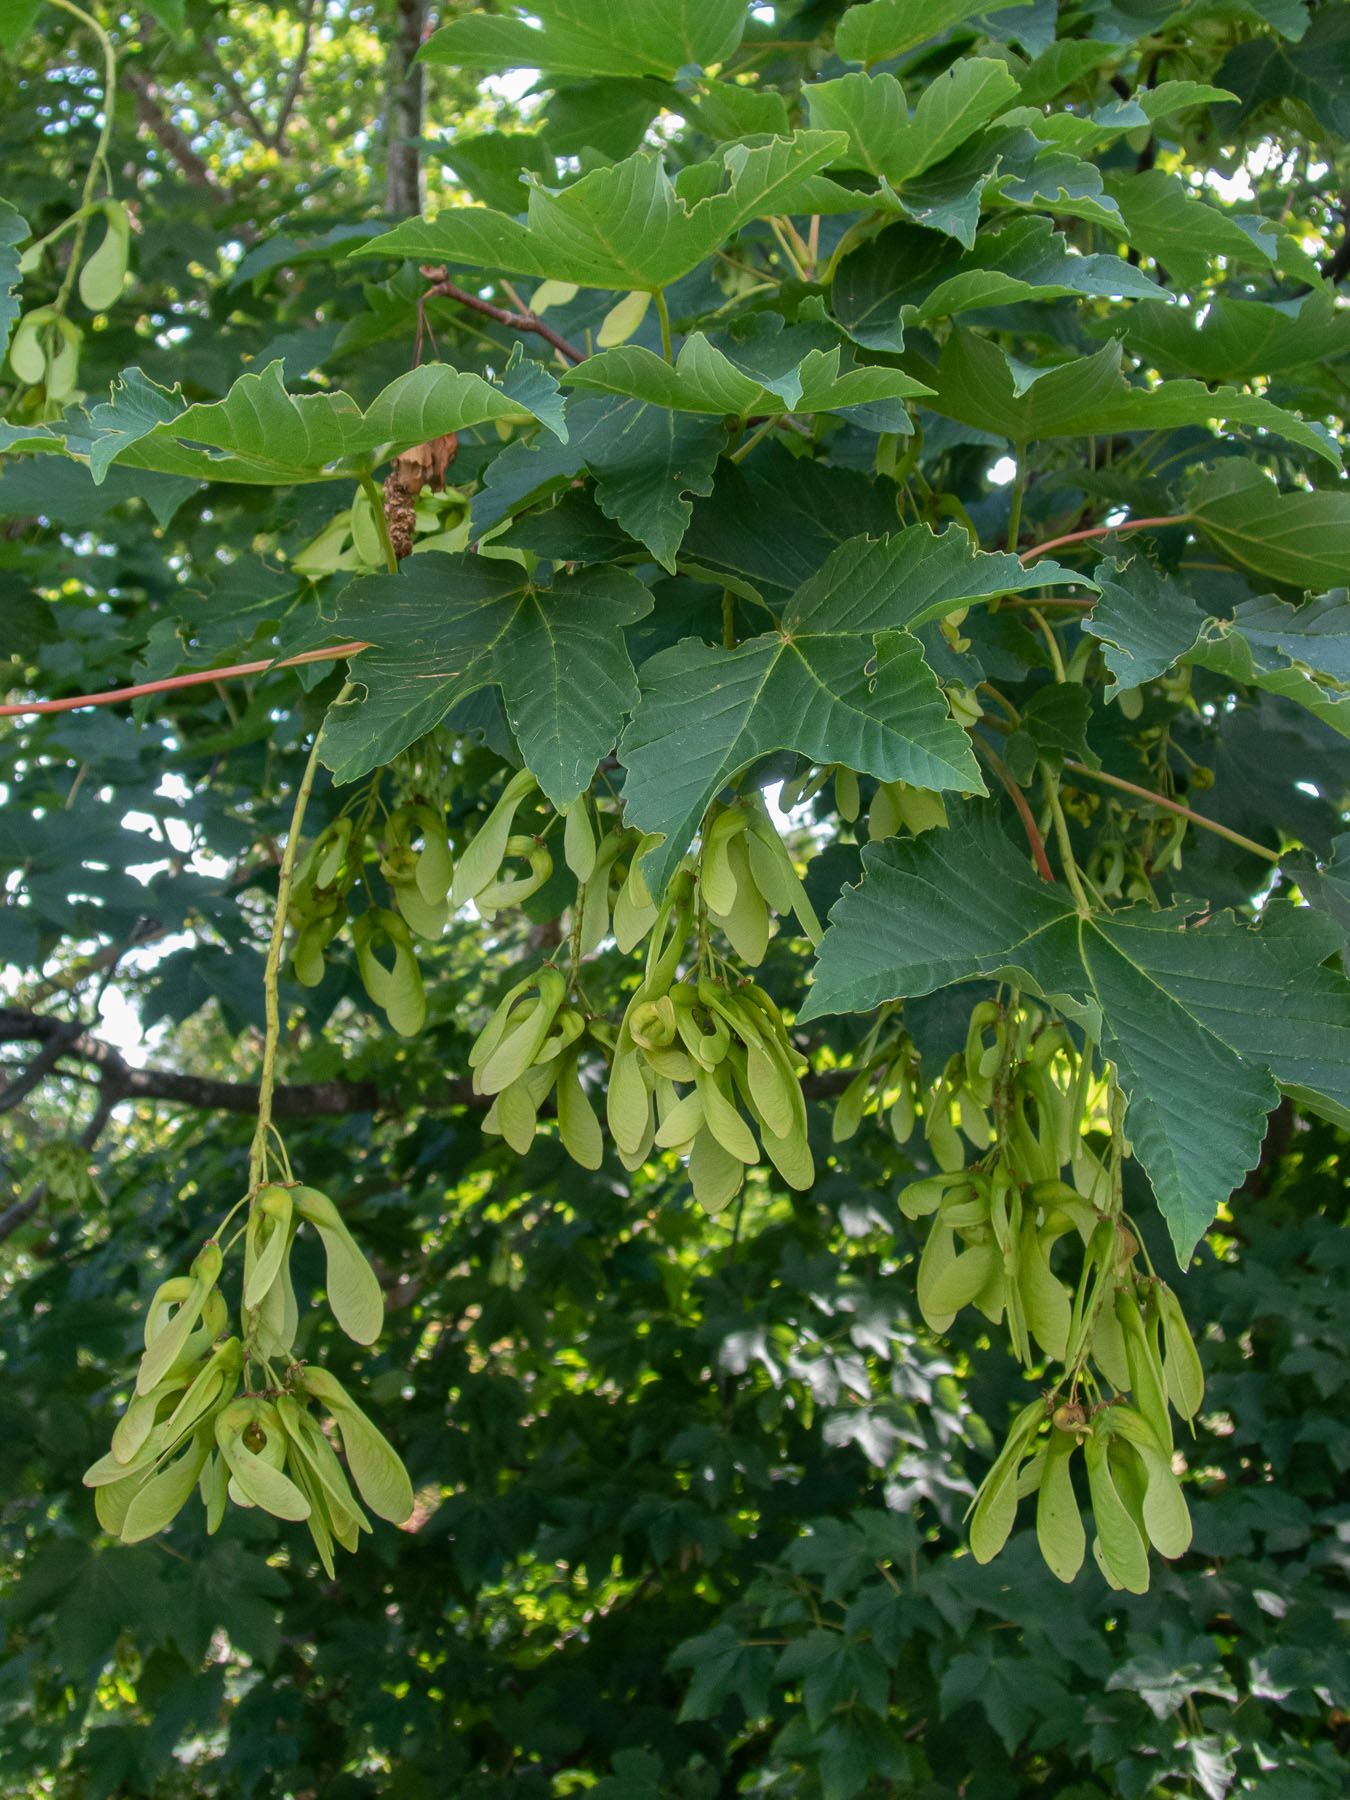 Плоды клёна ложноплатанового (Acer pseudoplatanus). Стокгольм, июнь 2020 года. Автор фото: Сутормина Марина